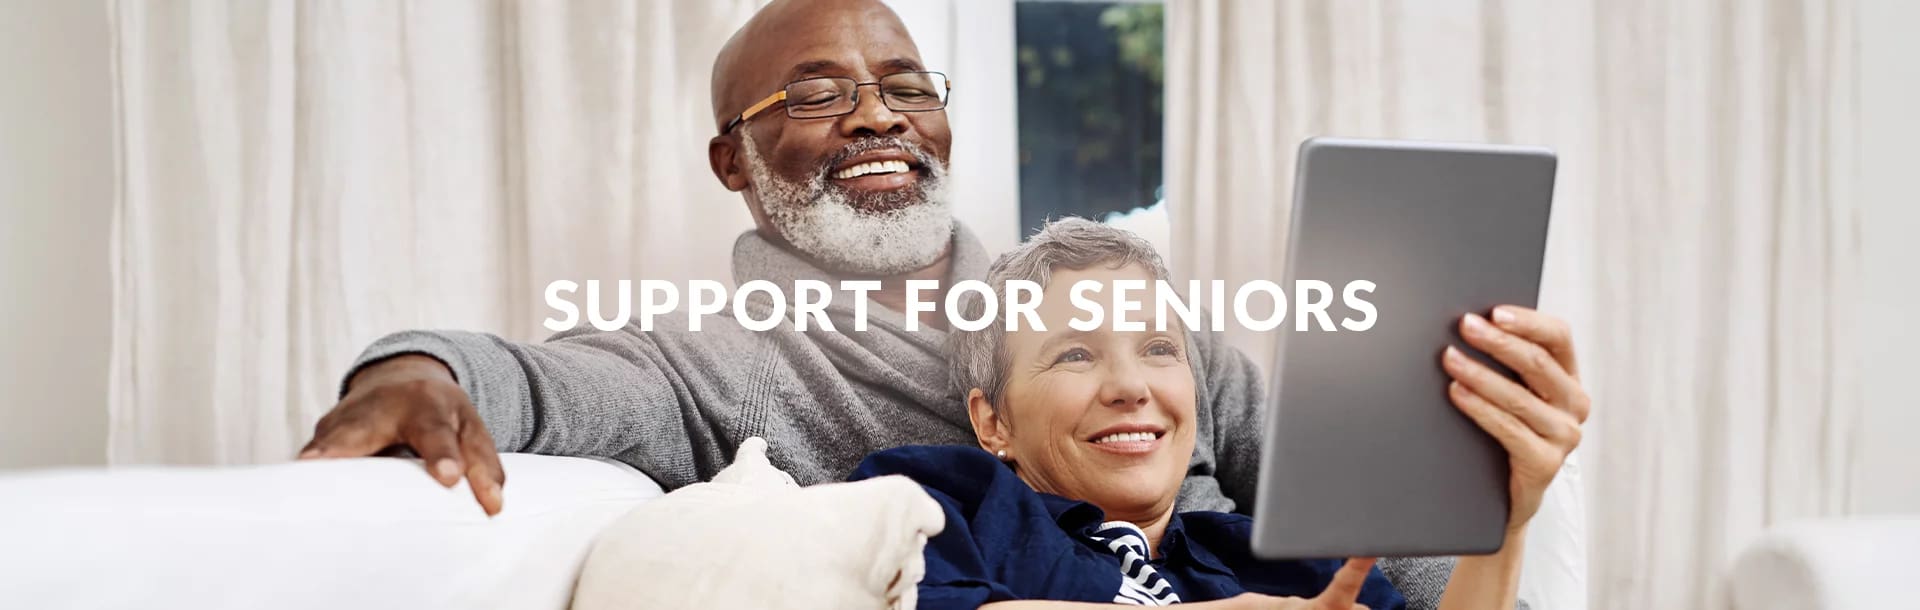 Support for Seniors